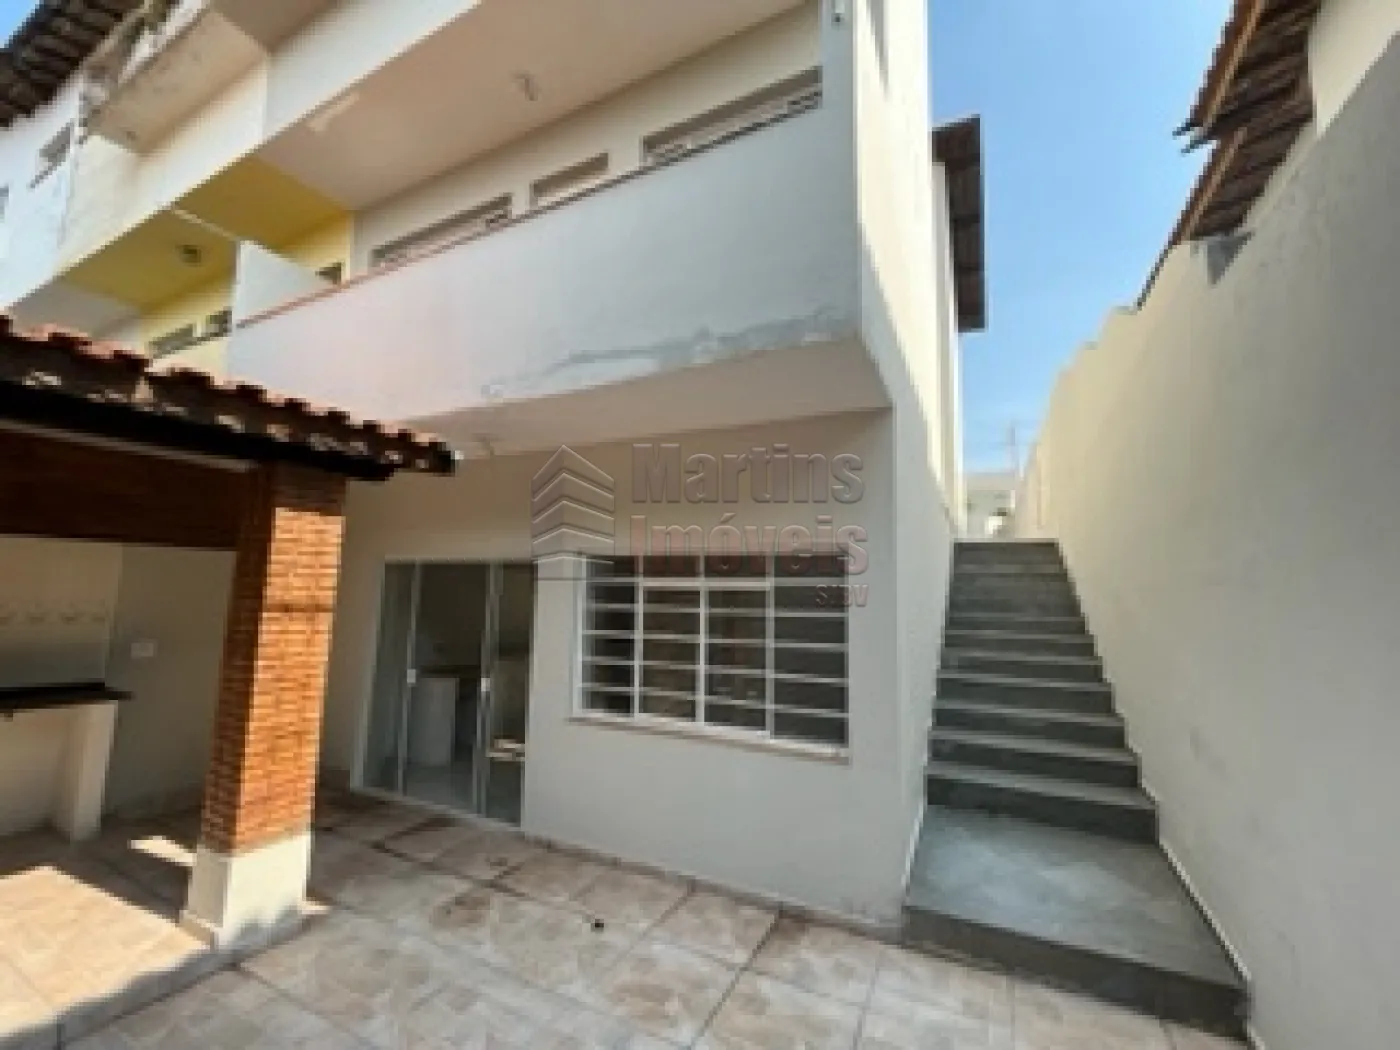 Comprar Casa / Padrão em São João da Boa Vista R$ 650.000,00 - Foto 18